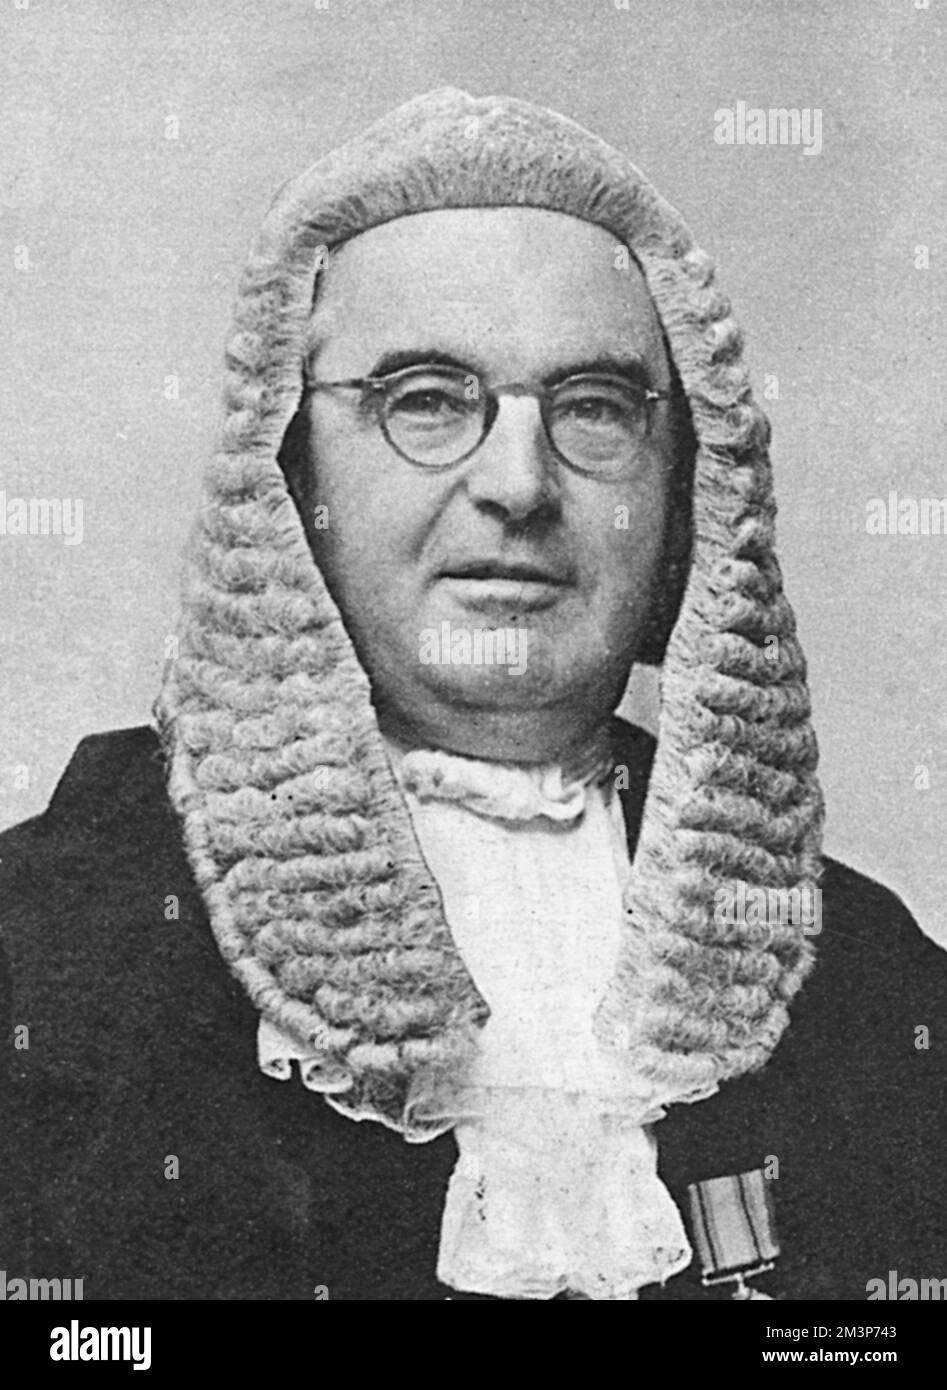 Generalstaatsanwalt, Sir Reginald Manningham-Buller, der die Anklage in den Spionageprozessen von 1961 leitete. Datum: Mai 1961 Stockfoto